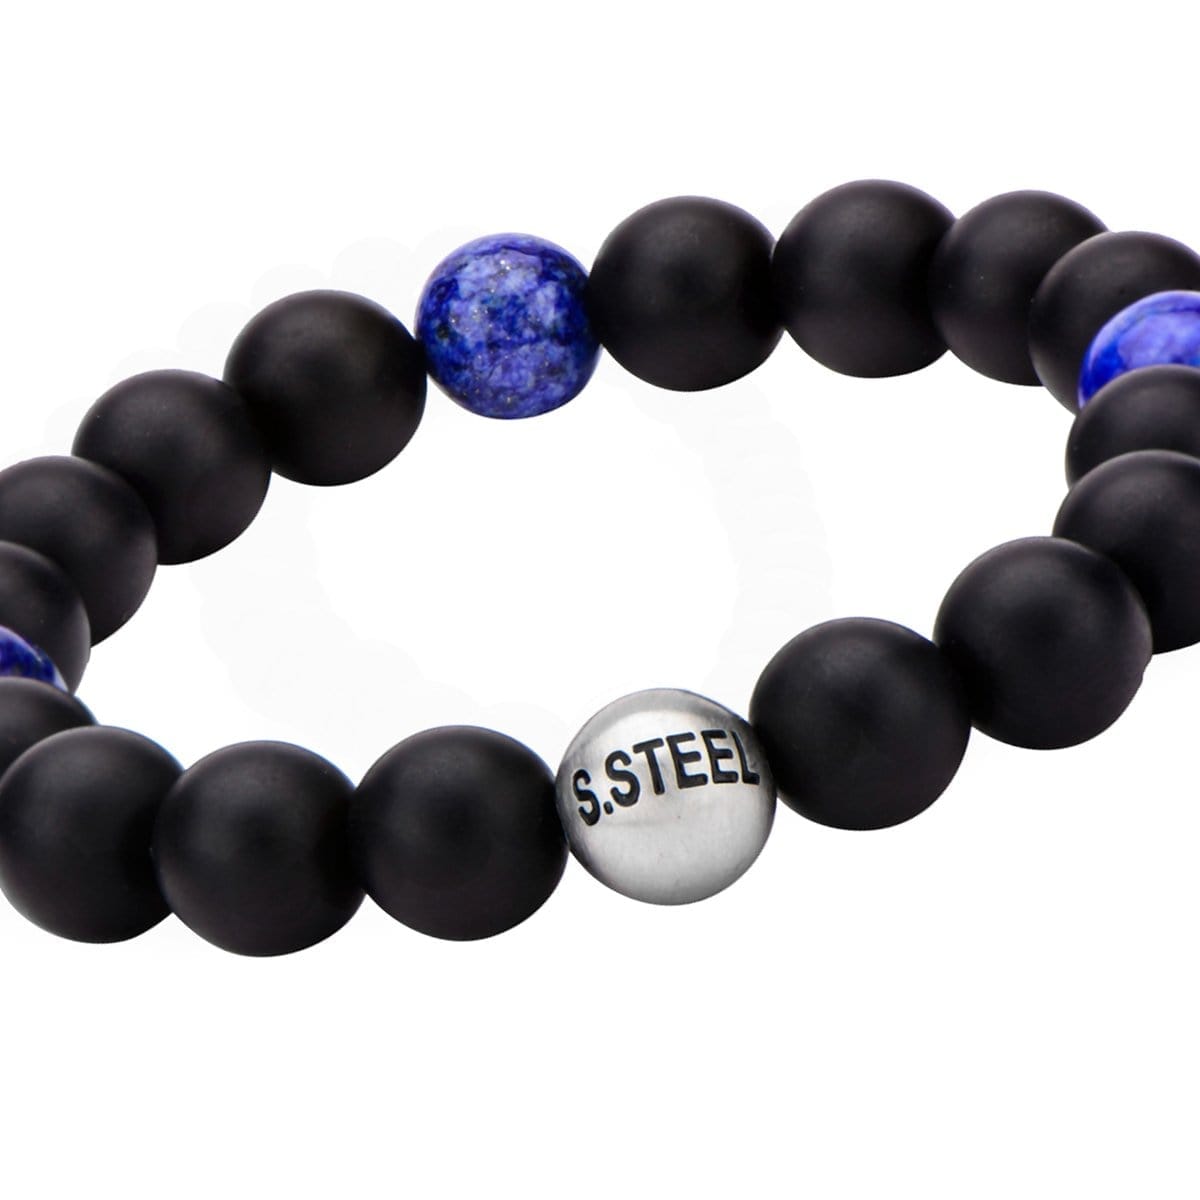 INOX JEWELRY Bracelets Silver Tone Stainless Steel Lapis Lazuli and Black Onyx Bead Stretch Bracelet BR5141